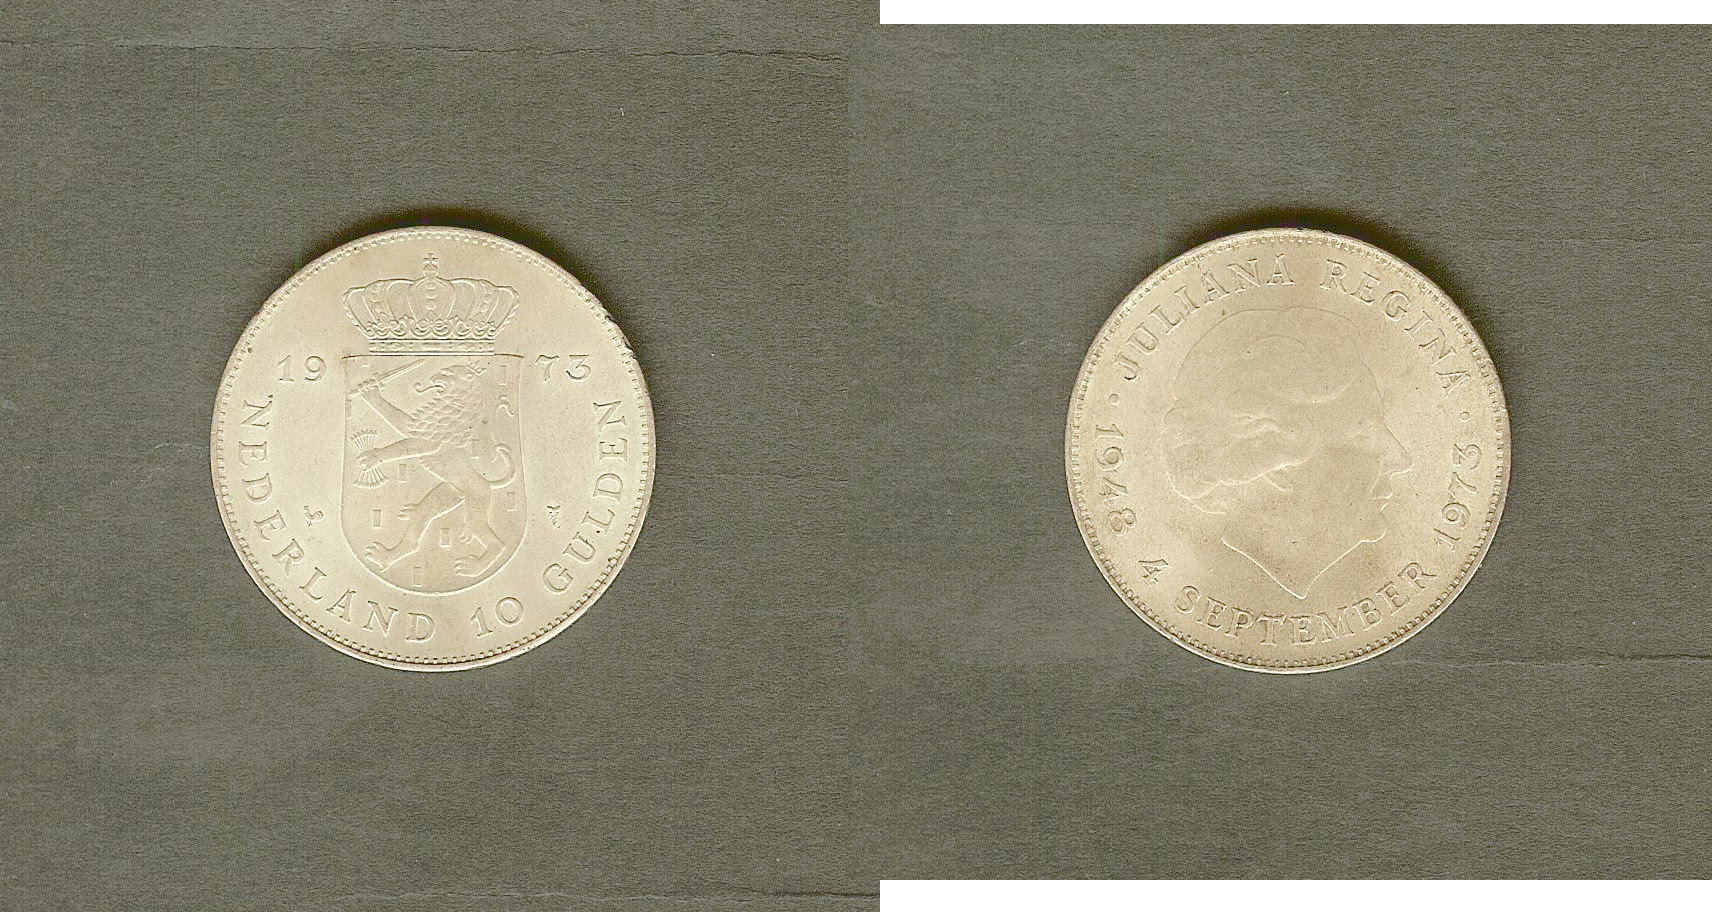 Netherlands 10 gulden 1973 AU/Unc